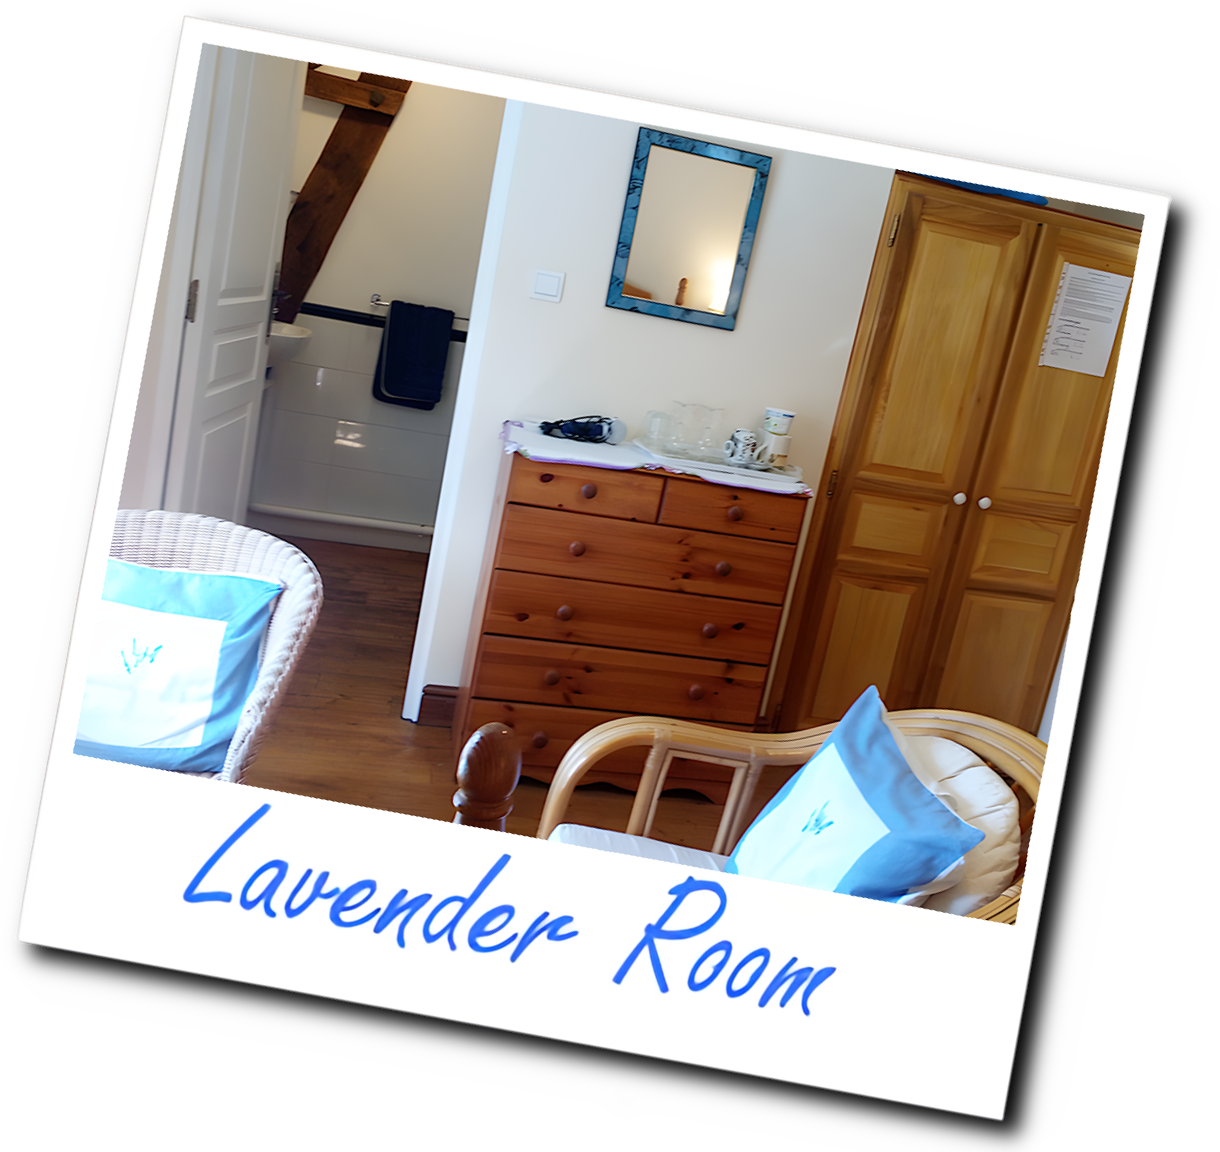 Lavender room